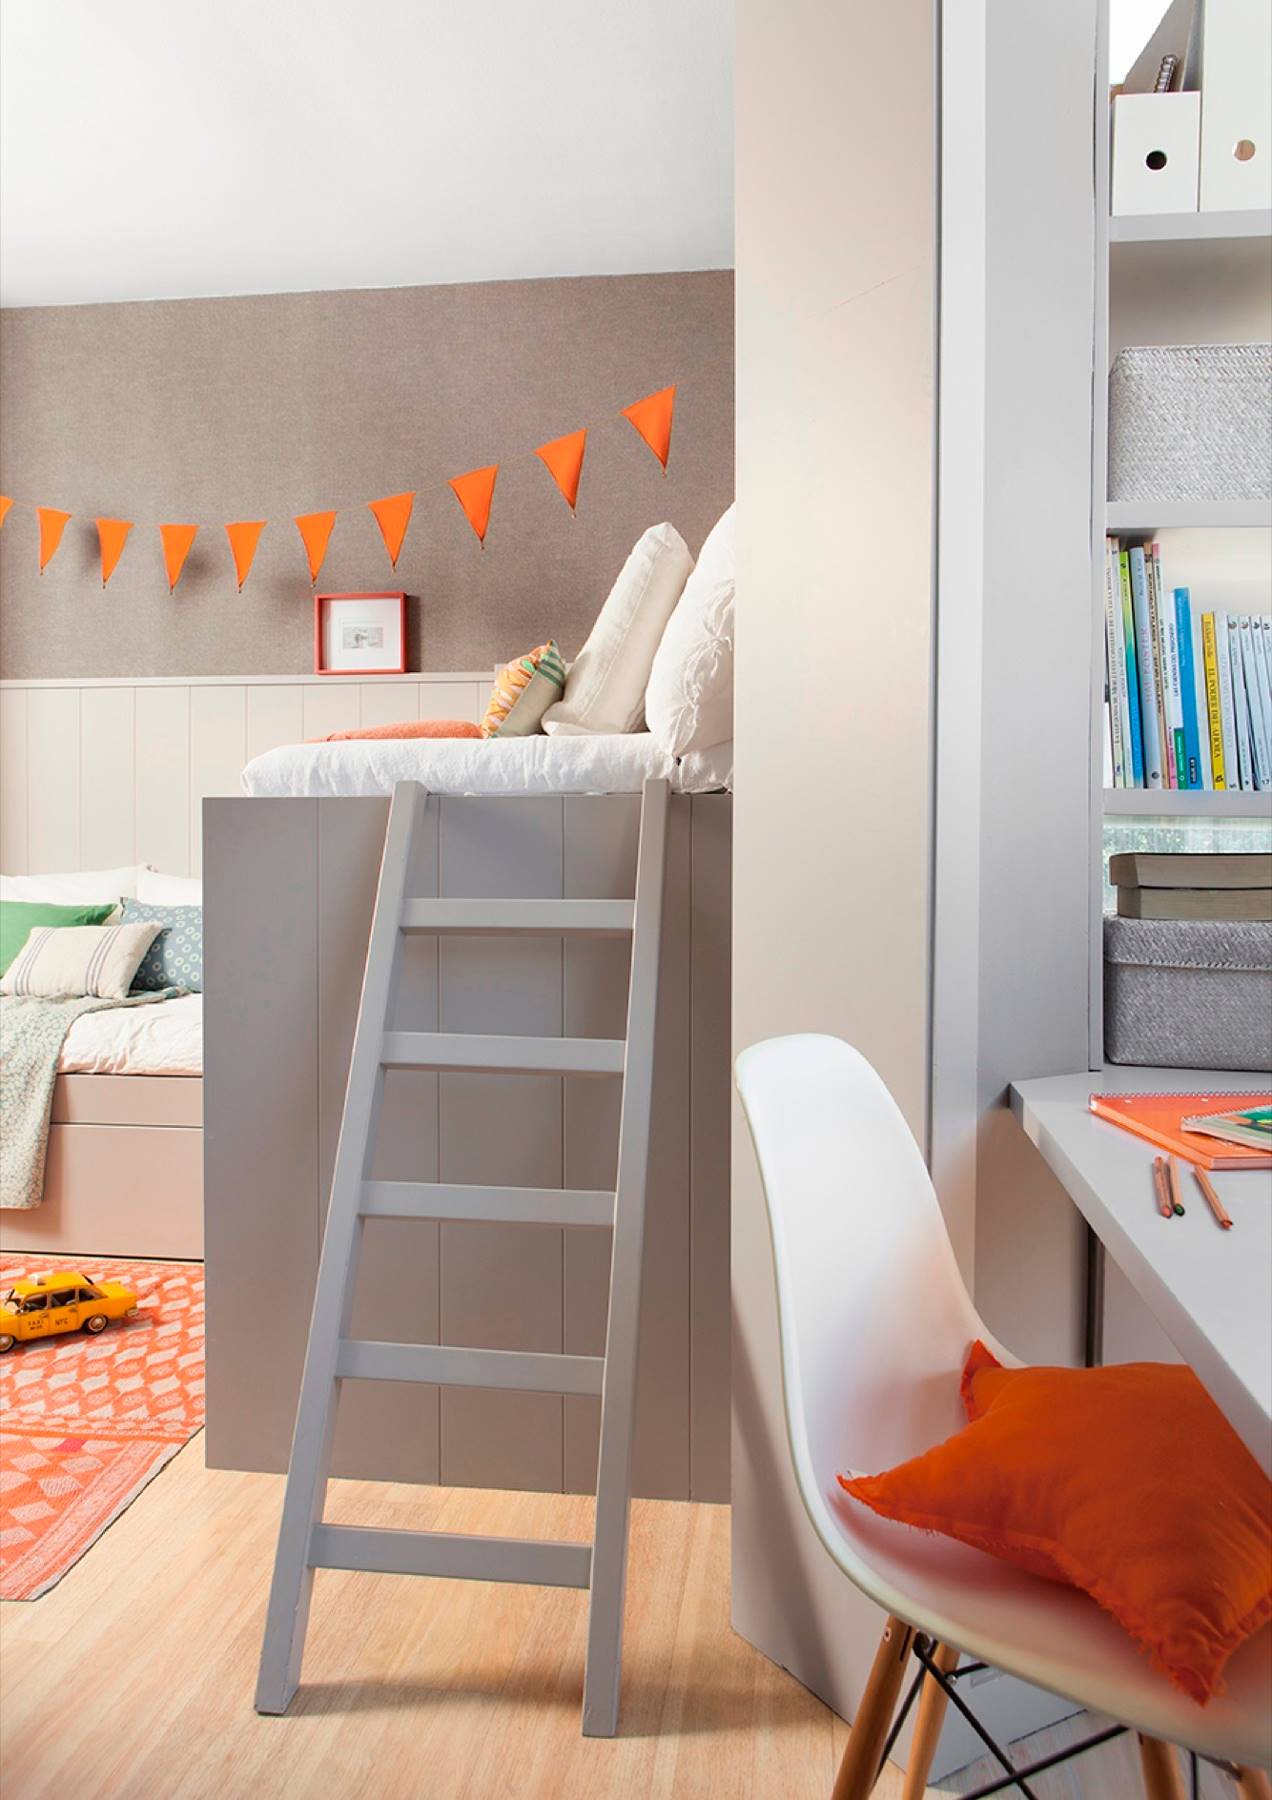 Dormitorio juvenil en gris con doble cama a diferentes alturas, escalera y banderines naranjas.